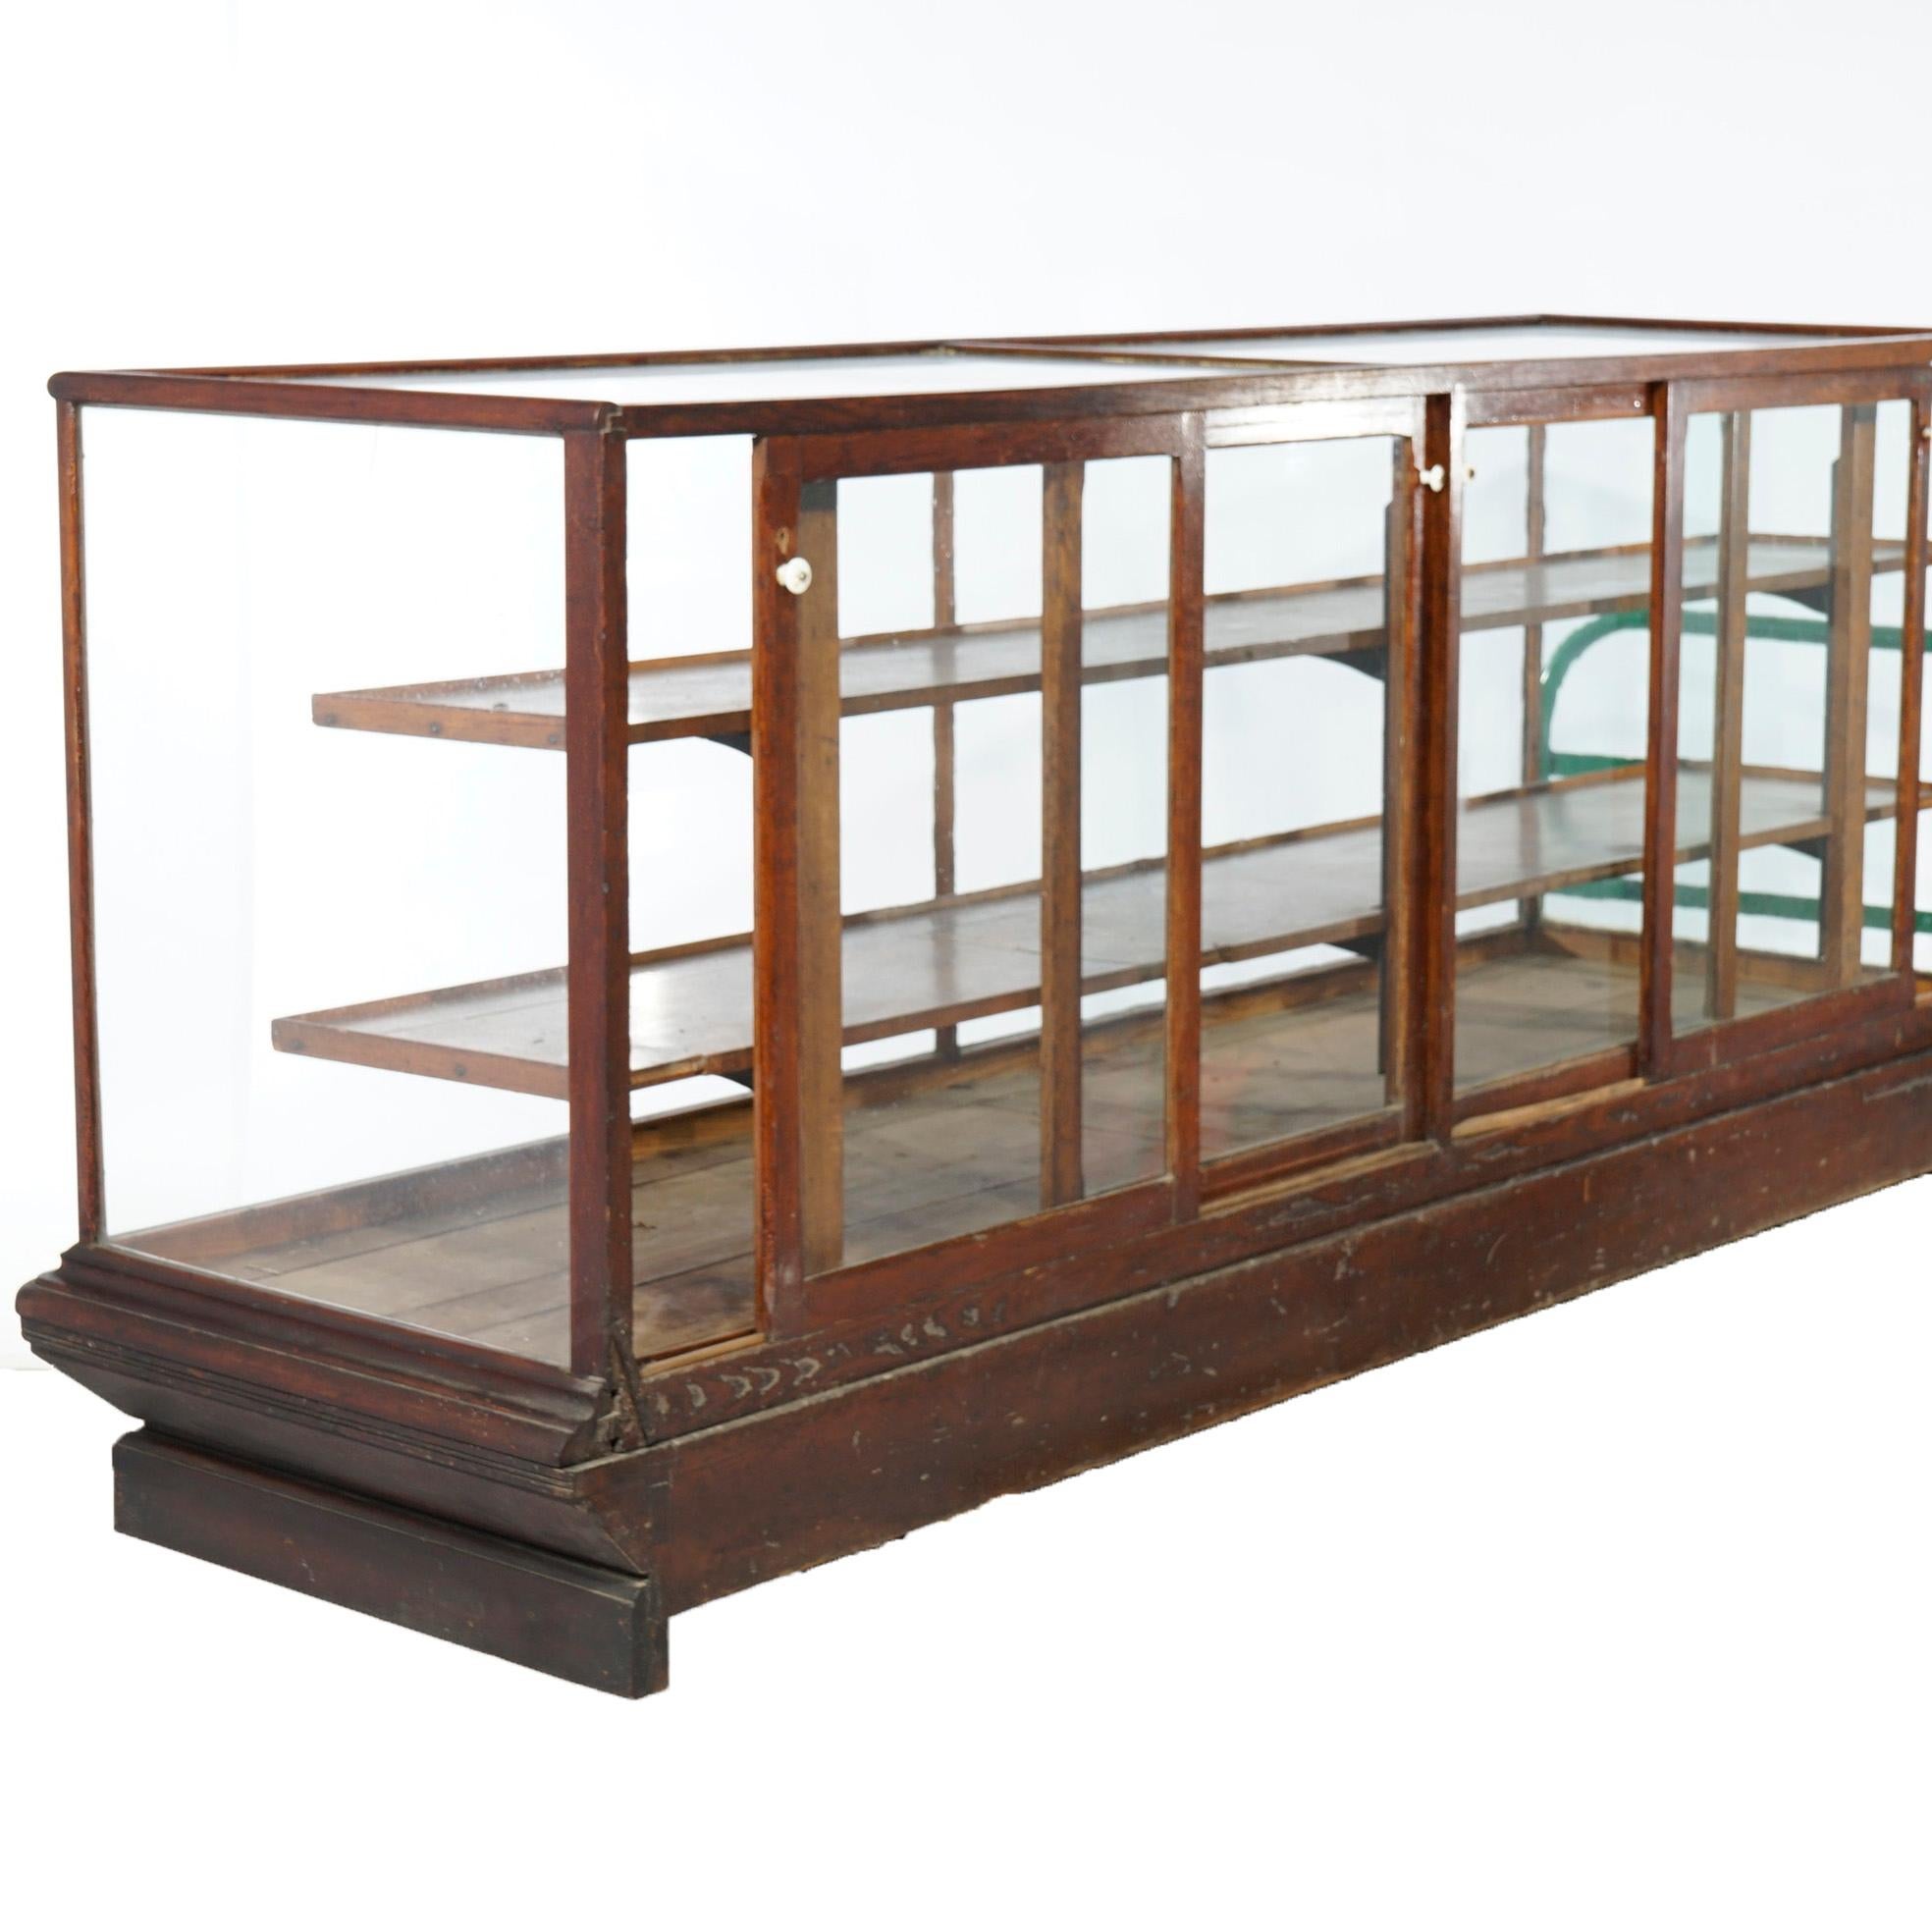 Une ancienne vitrine de magasin de campagne offre un cadre en chêne avec des portes en verre coulissantes, un intérieur à étagères et une base conique, vers 1900.

Mesures- 41.5''H x 94.25''W x 28.5''D